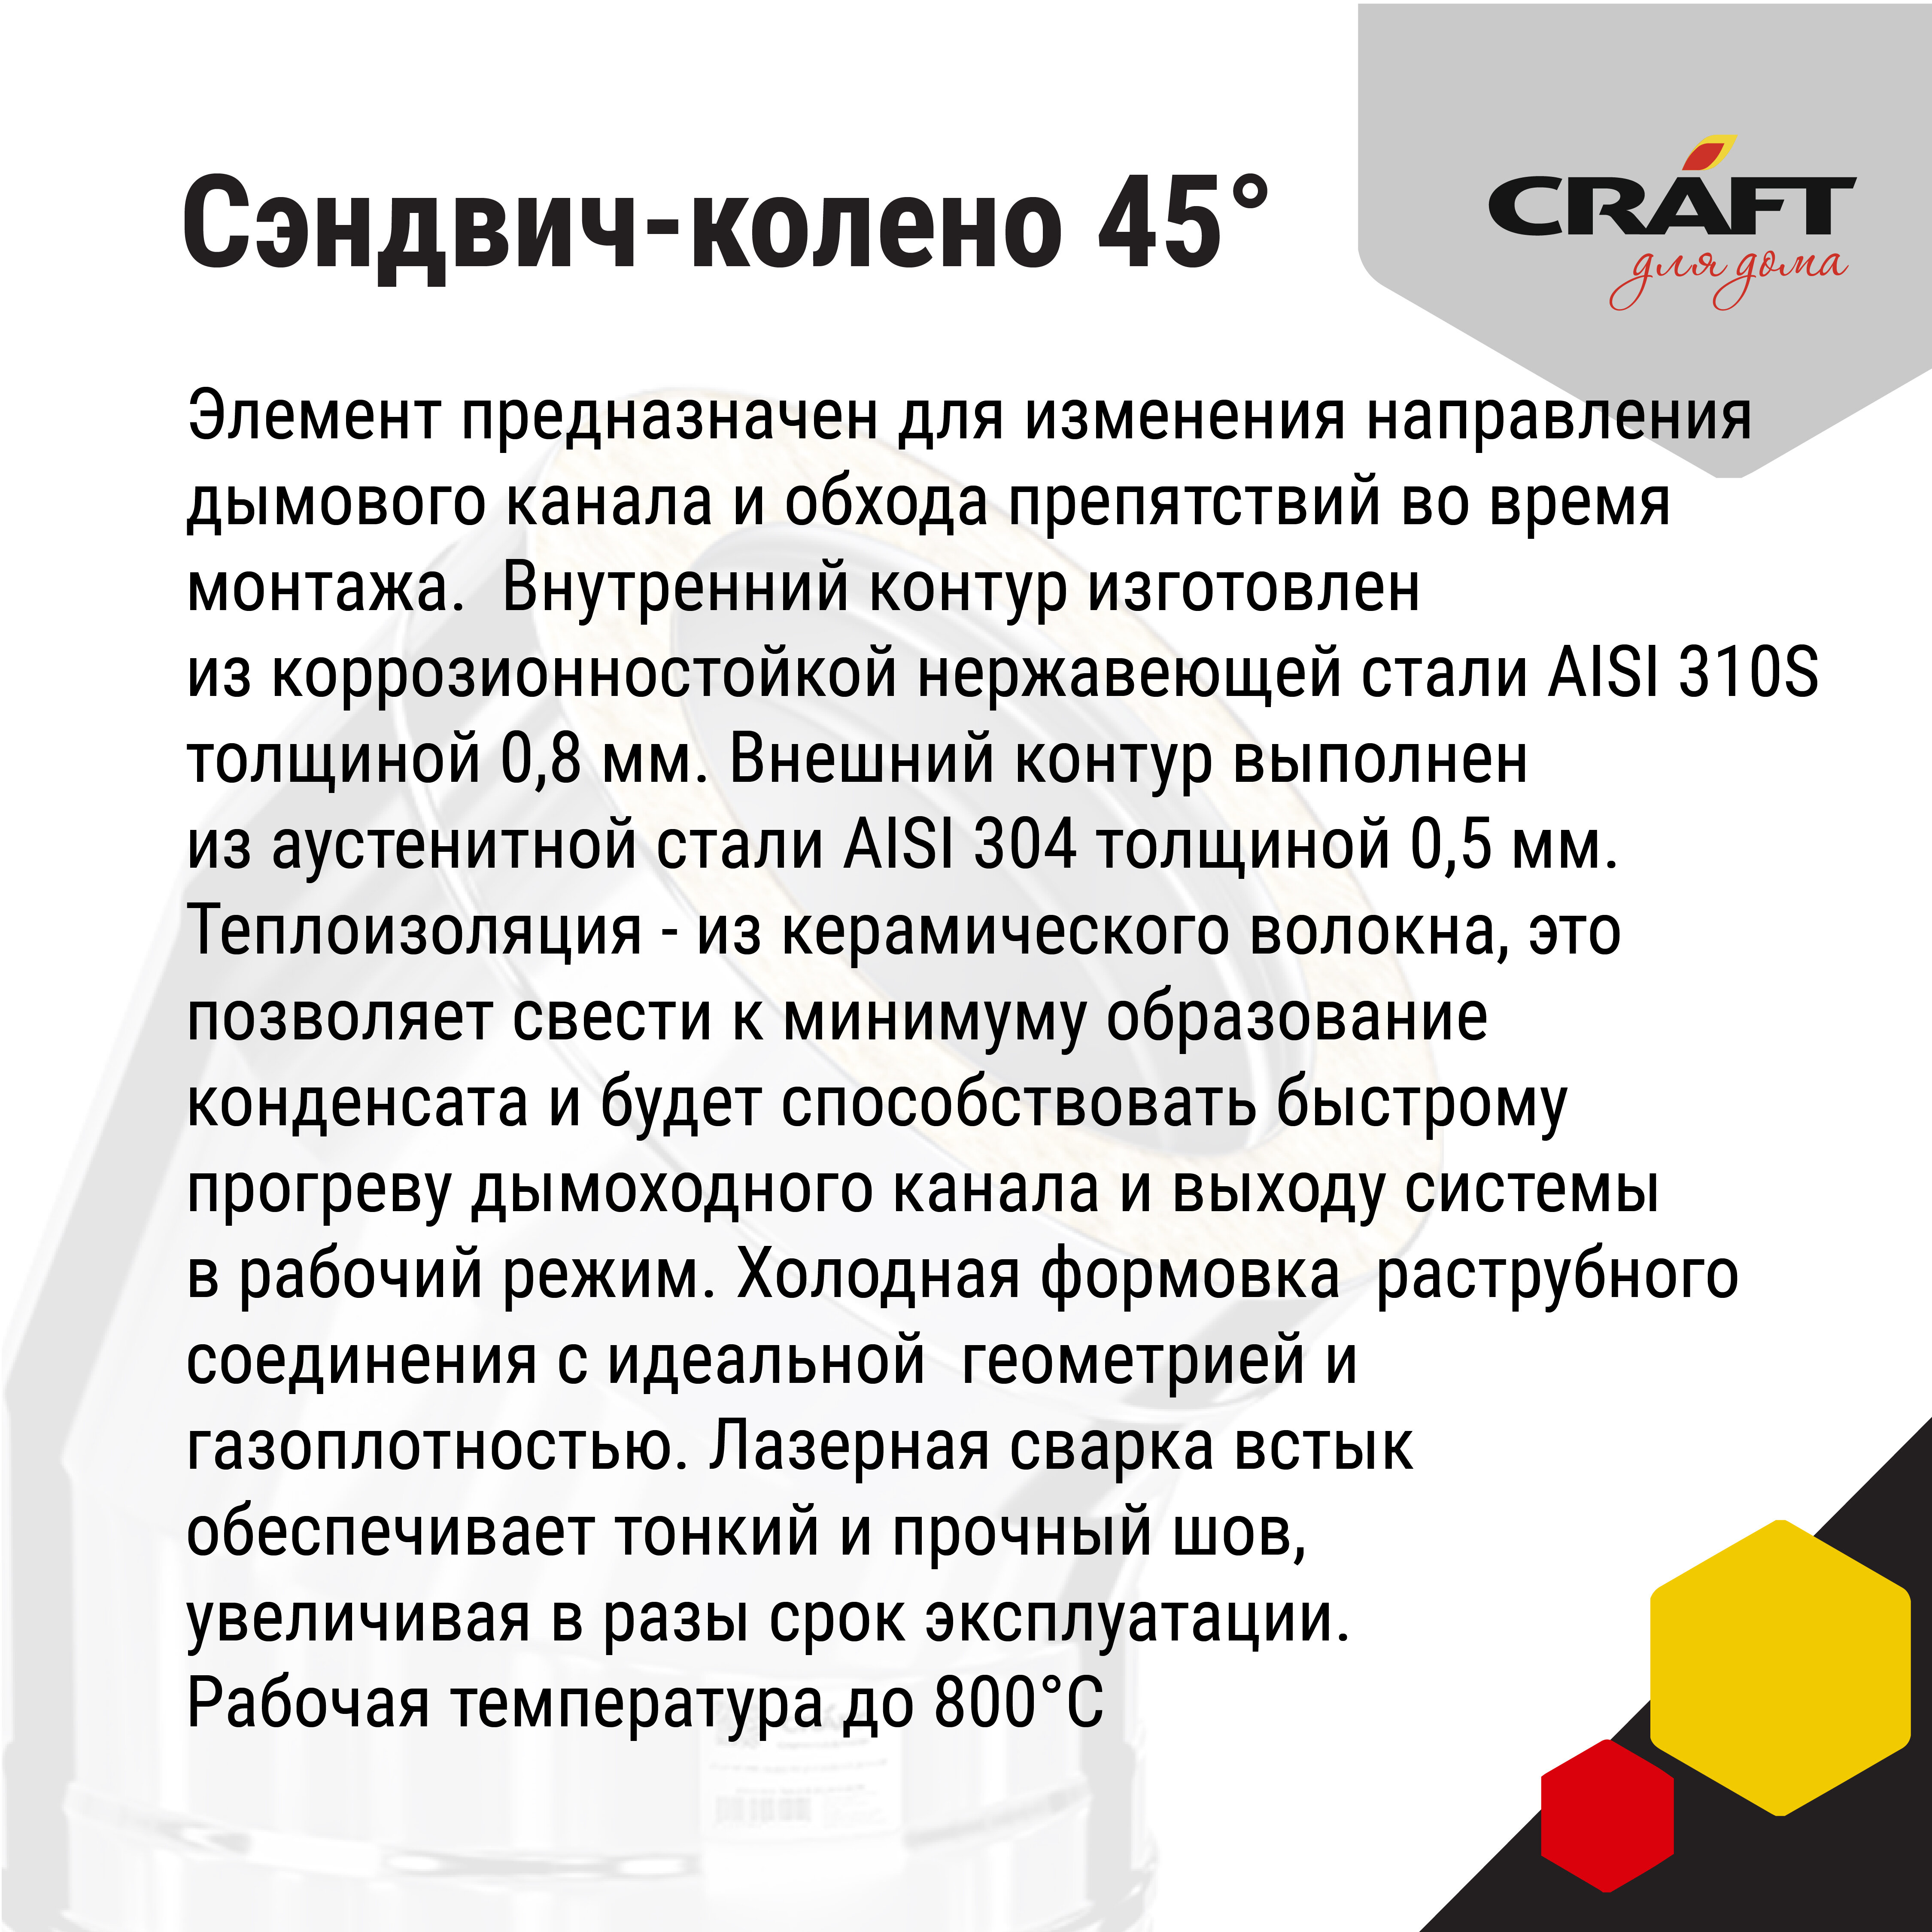 Craft HT-50B сэндвич-колено 45° (310/0,8/304/0,5) Ф120х220 - фотография № 3